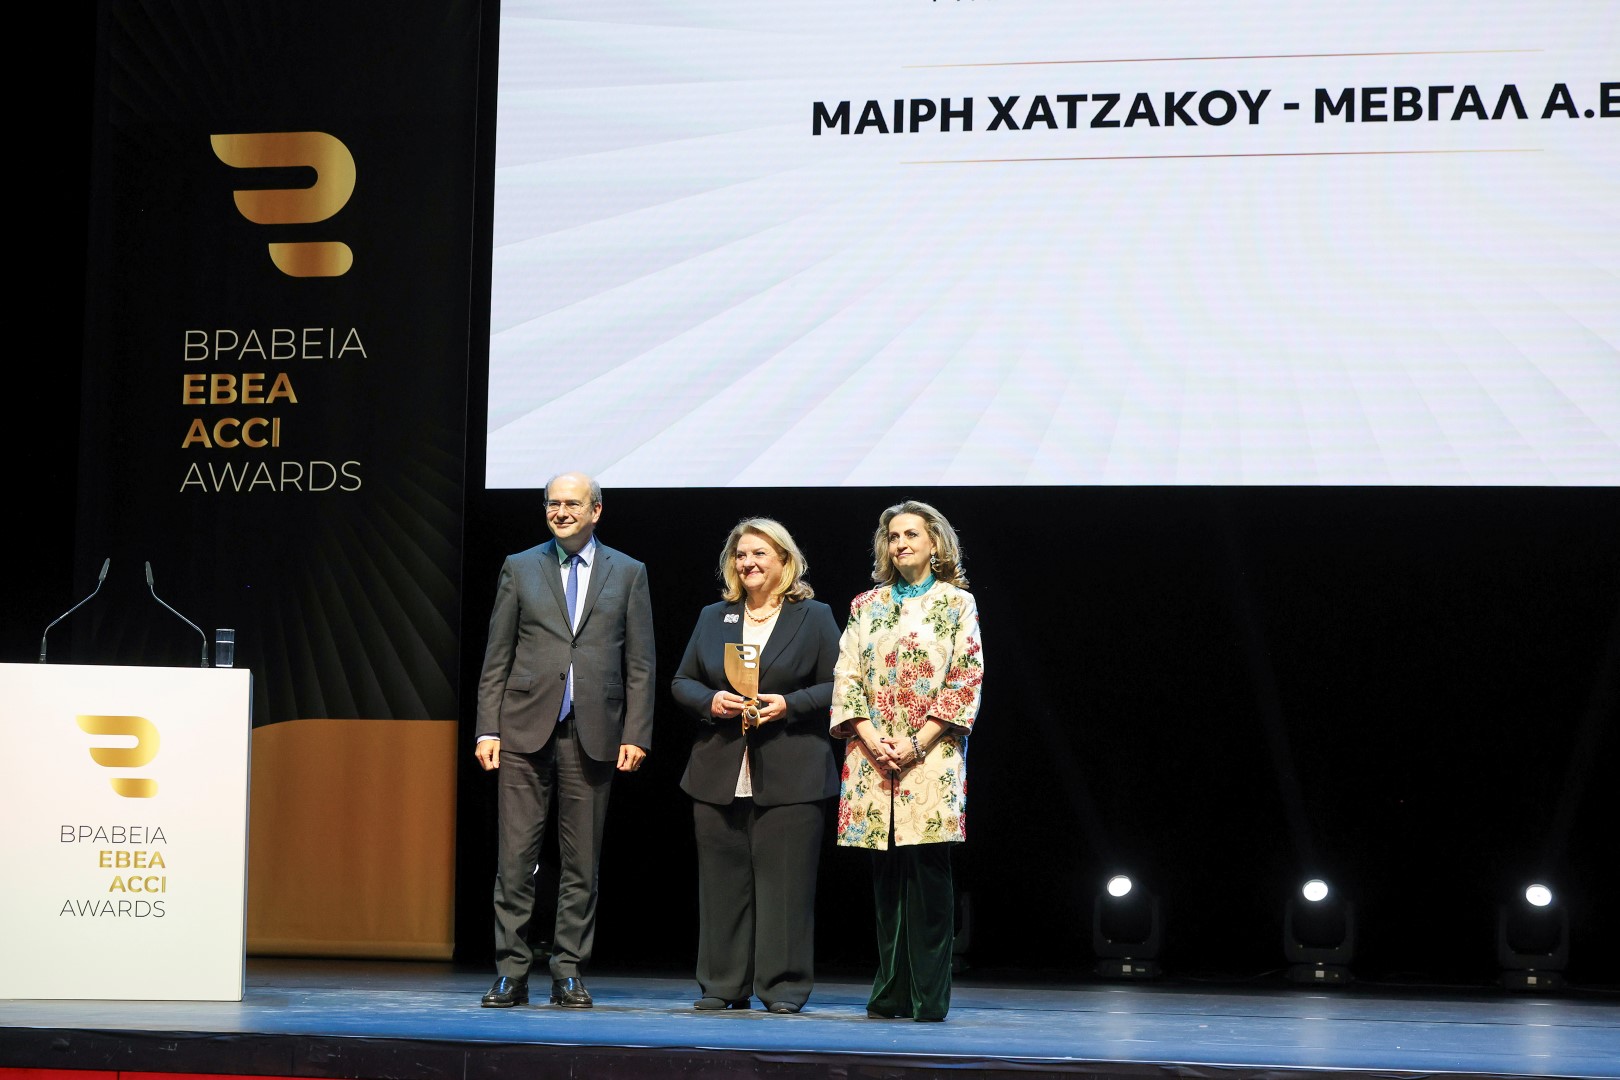 Η κυρία Μαίρη Χατζάκου της ΜΕΒΓΑΛ βραβεύθηκε από τον υπουργό Εθνικής Οικονομίας και Οικονομικών κ. Κωστή Χατζηδάκη